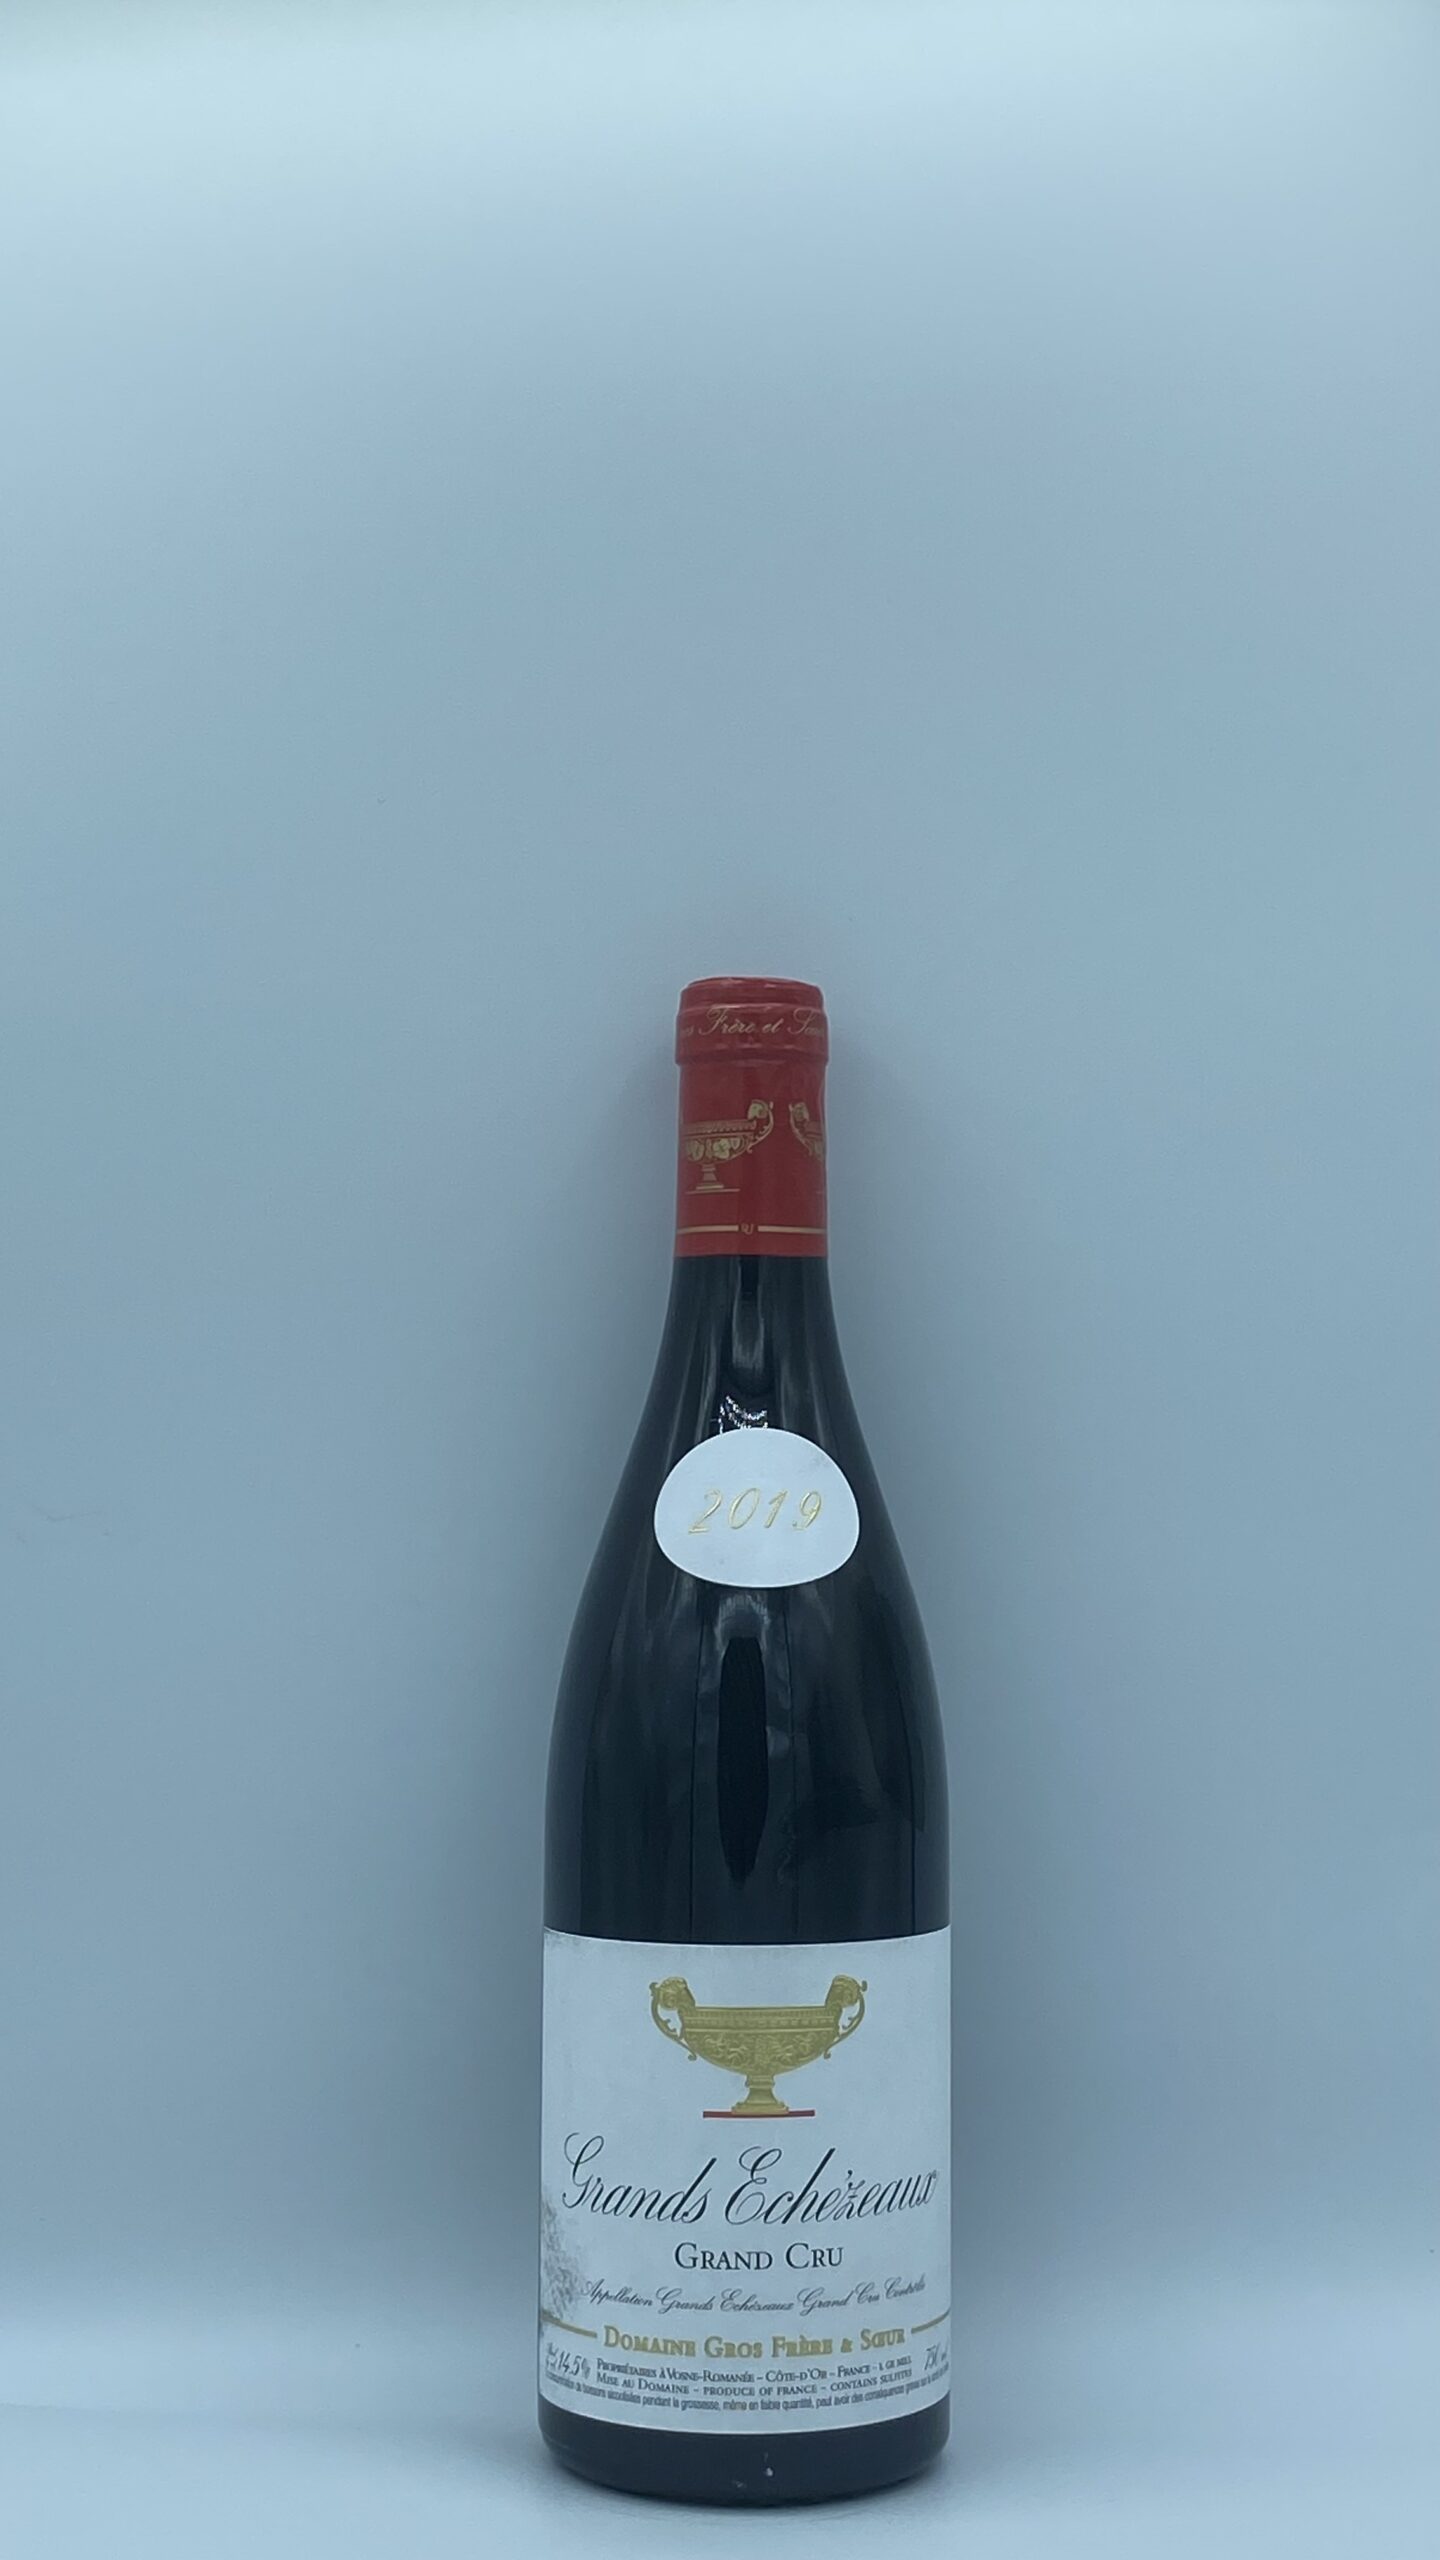 Bourgogne Grands Echezeaux 2019 Domaine Gros Frère et Soeur